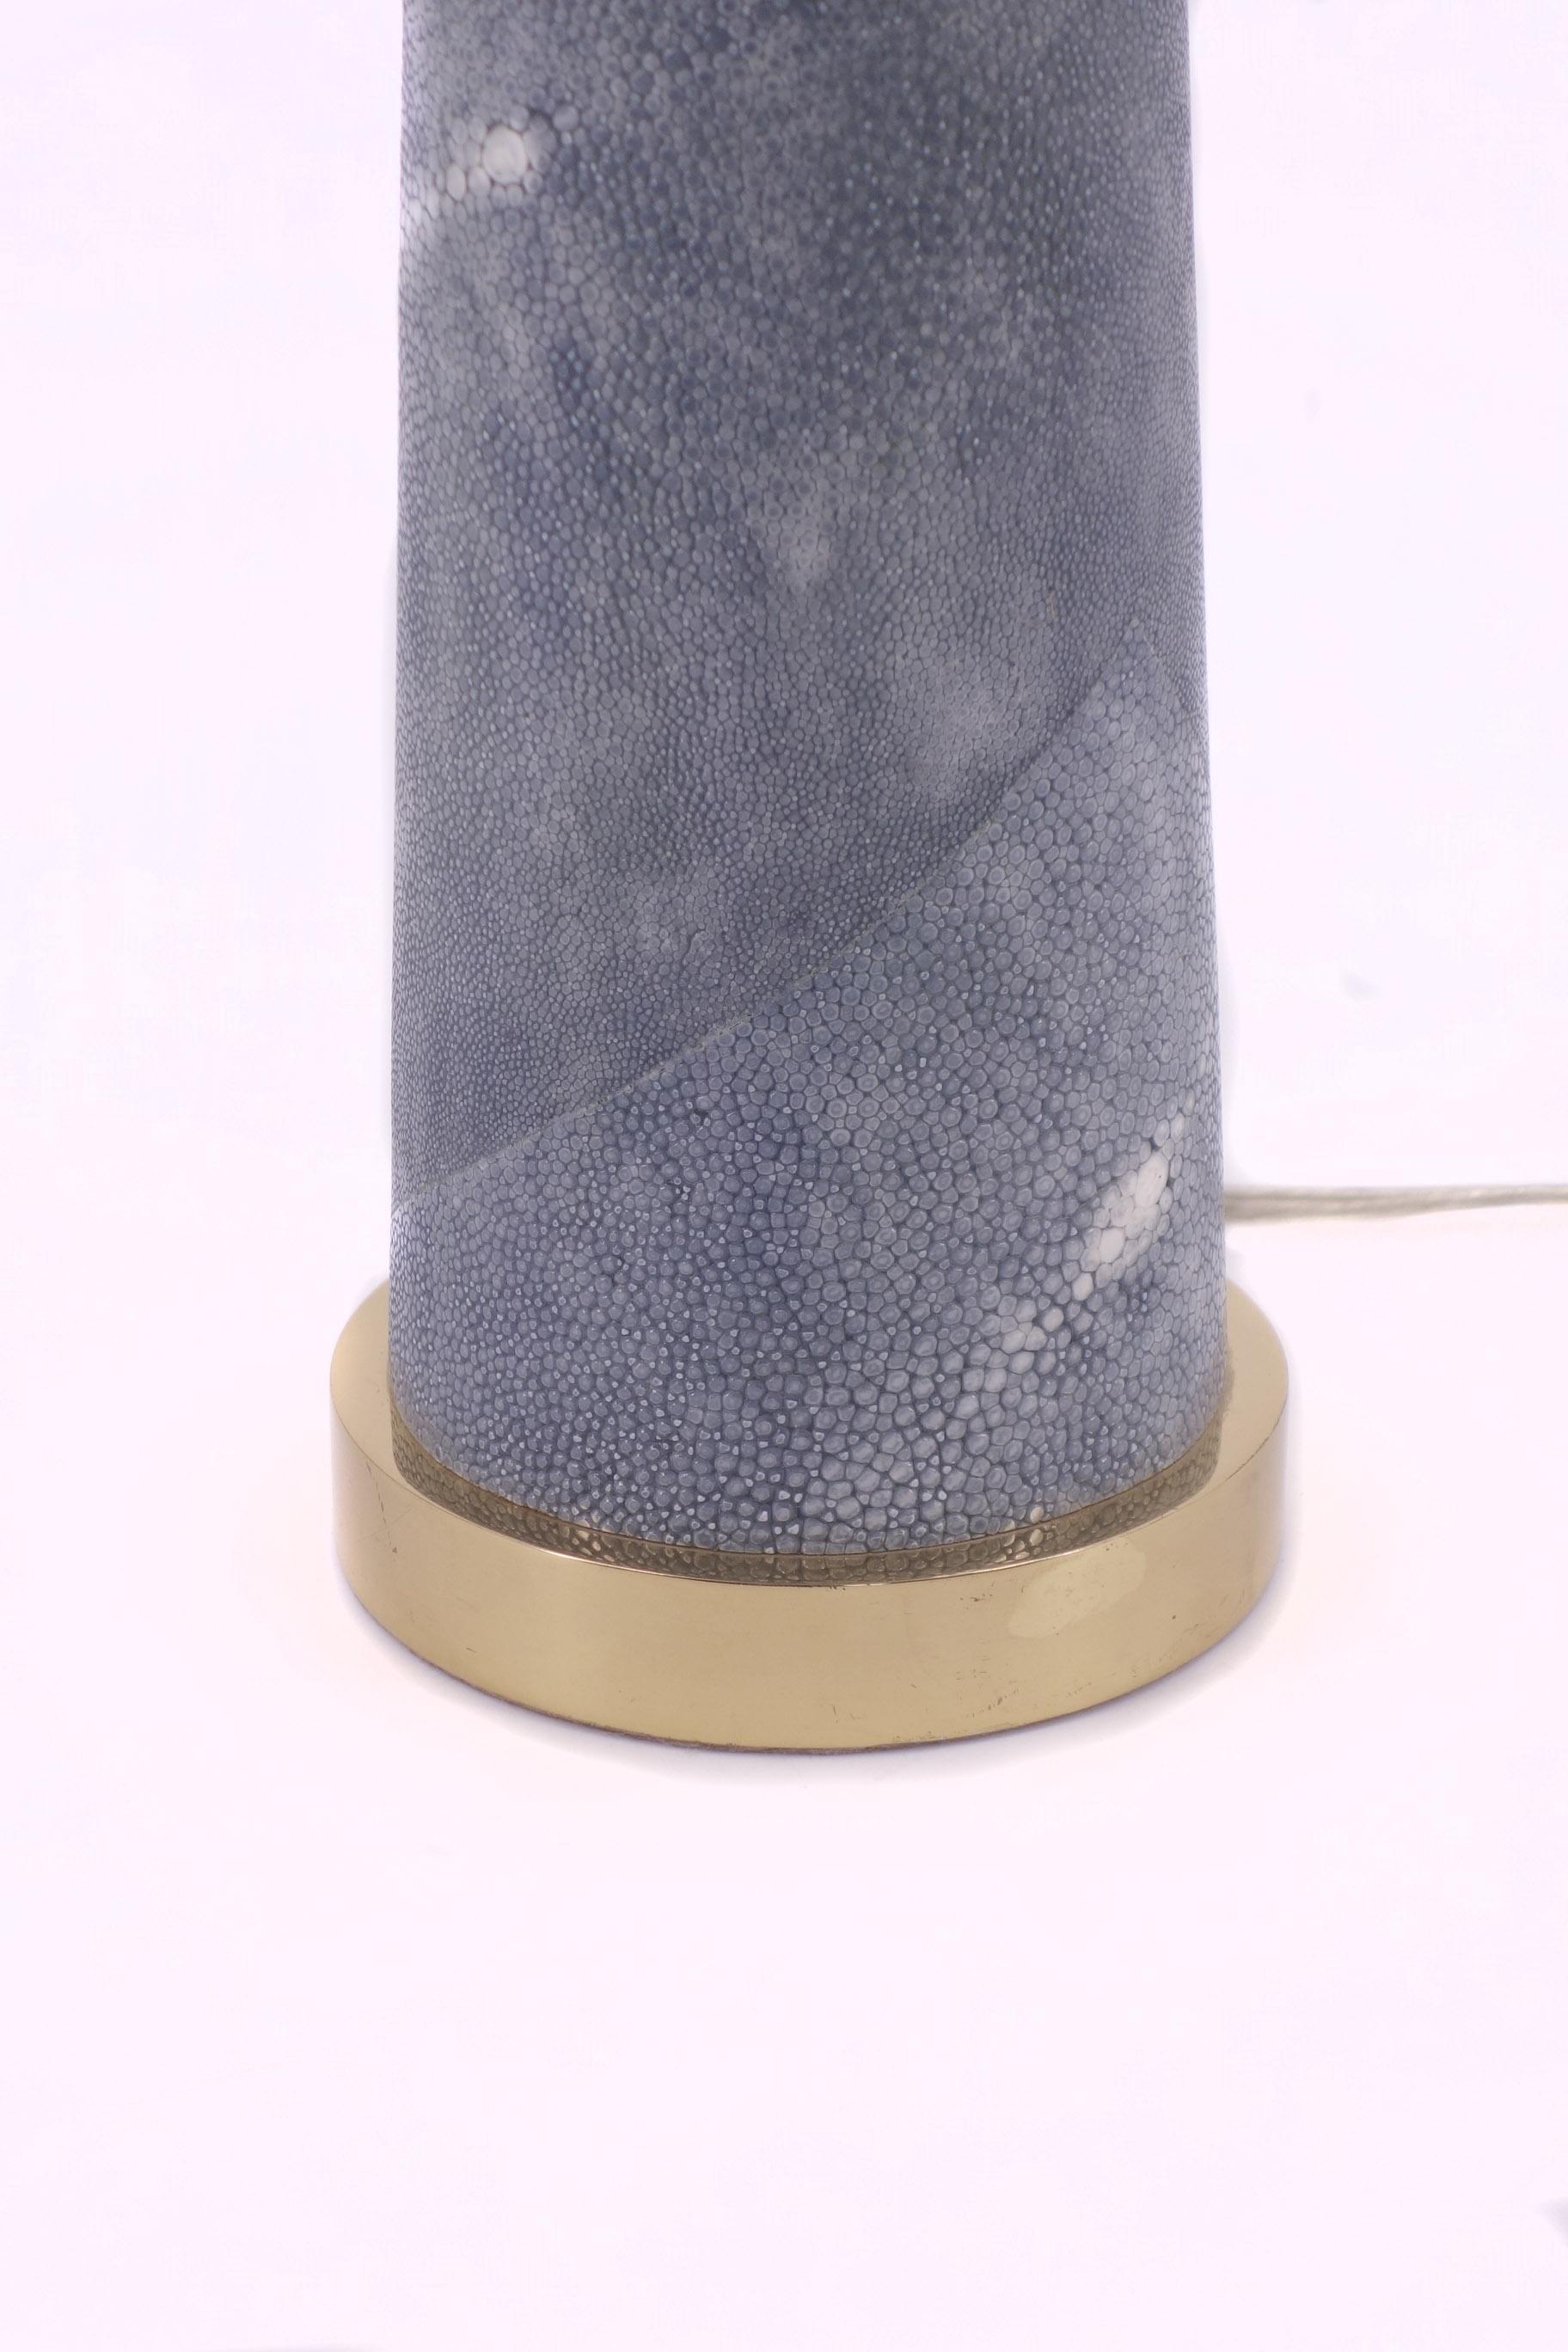 lampe de table 'Lighthouse' conçue par Karl Springer.
Cette lampe de forme conique est recouverte de galuchat bleu pâle avec des détails en laiton.

 